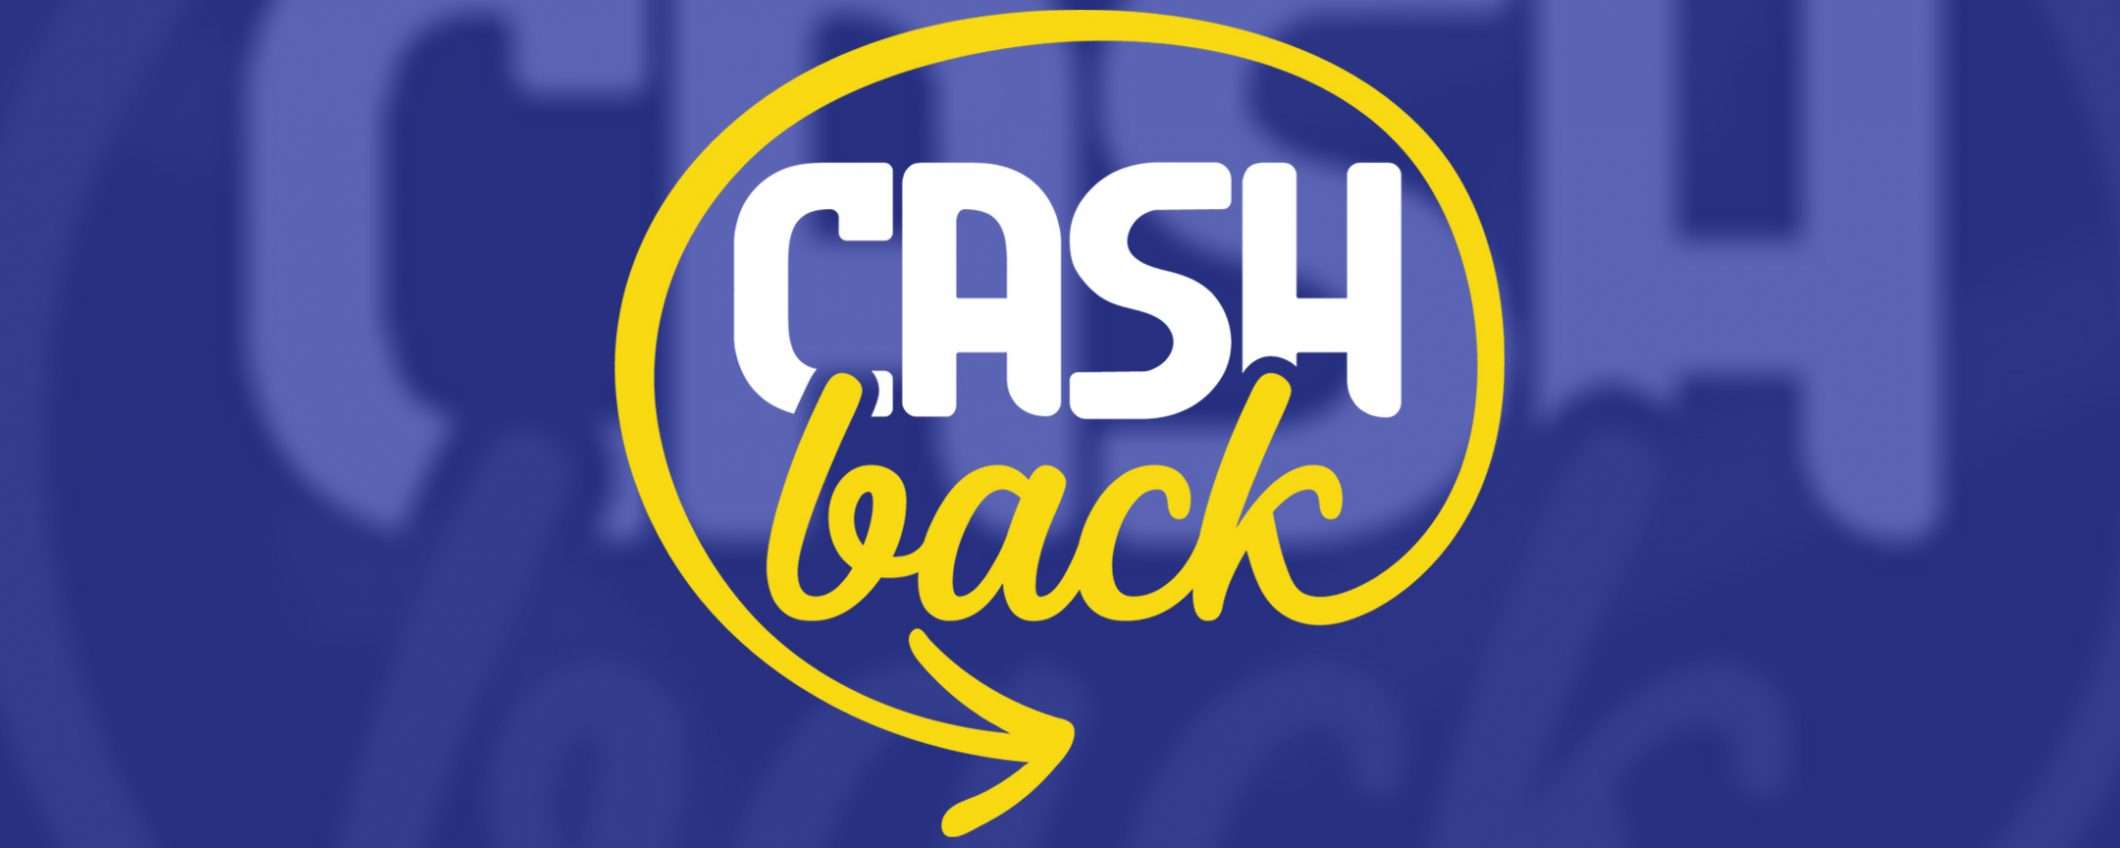 Cashback: alla fine non ci avremo capito nulla